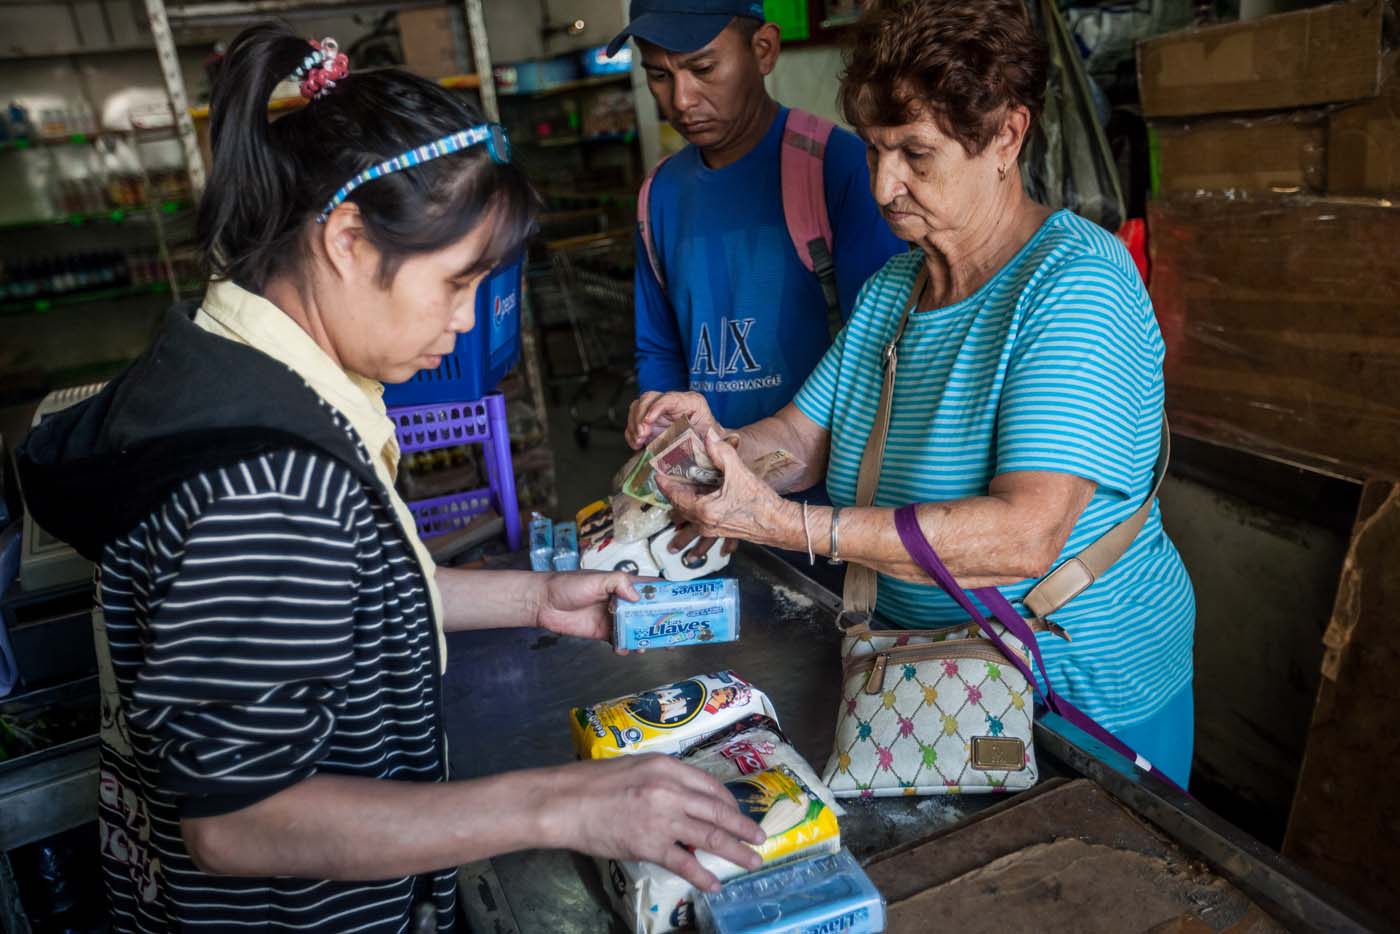 El shock económico en Latinoamérica exige cambios más ambiciosos, según la Cepal